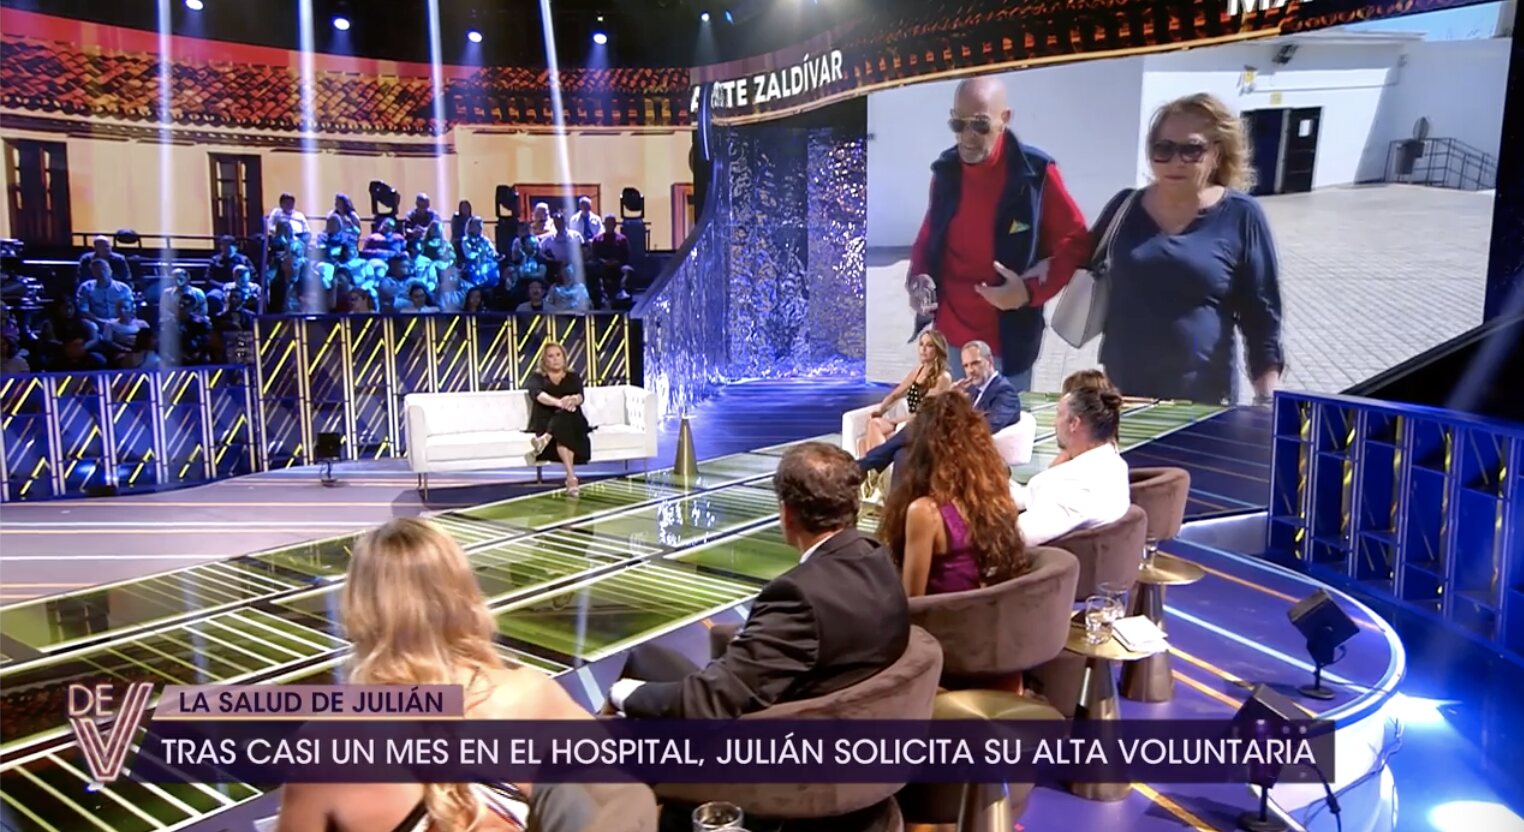 Mayte Zaldívar hablar del perdón a Julián Muñoz después de 'Caso Malaya' | Foto: Telecinco.es